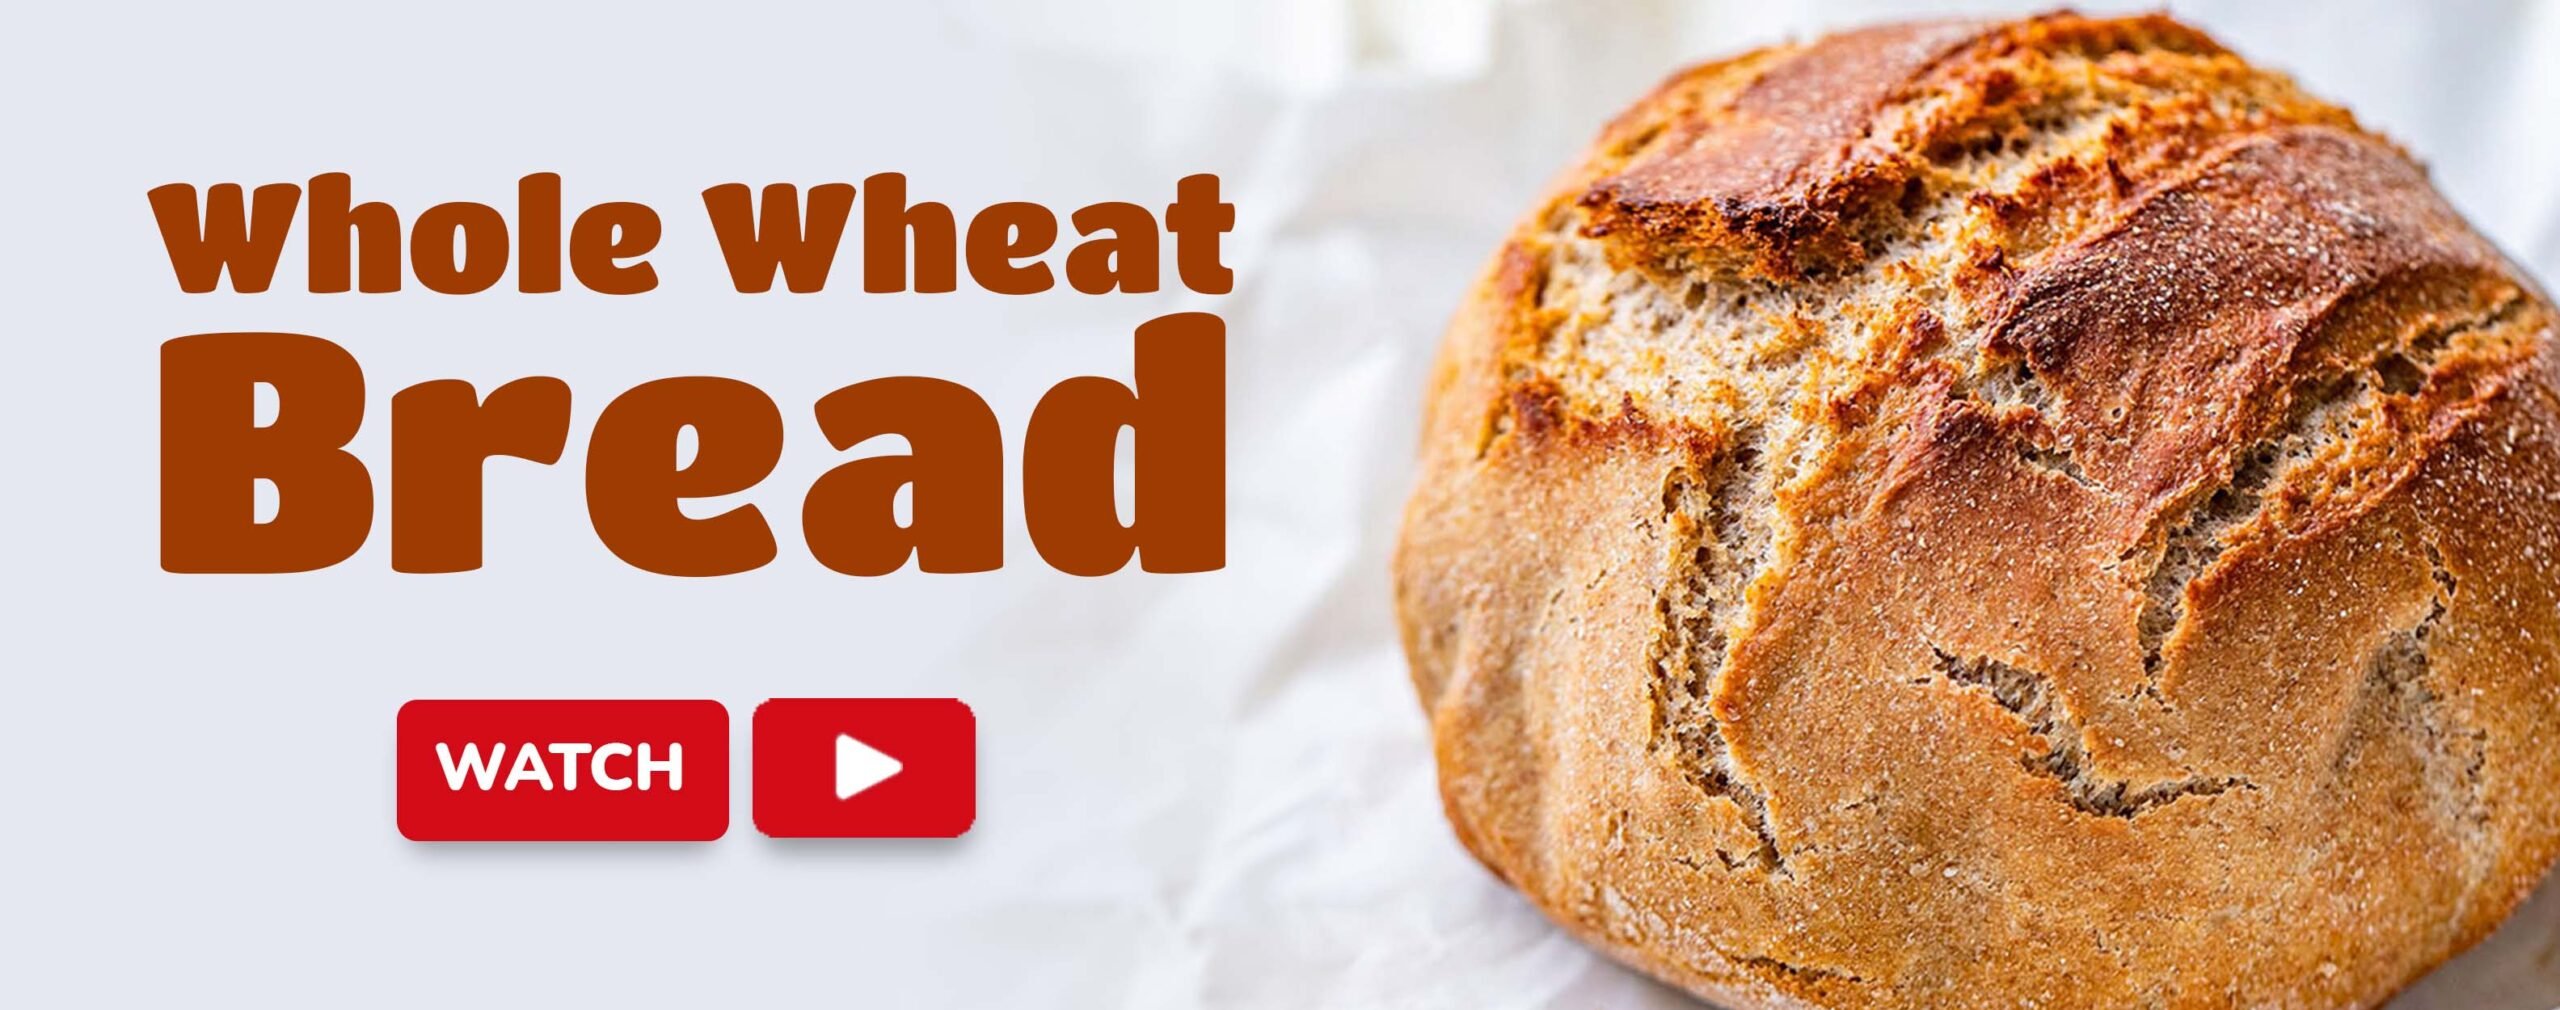 whole-wheat-bread-new-recipe-web